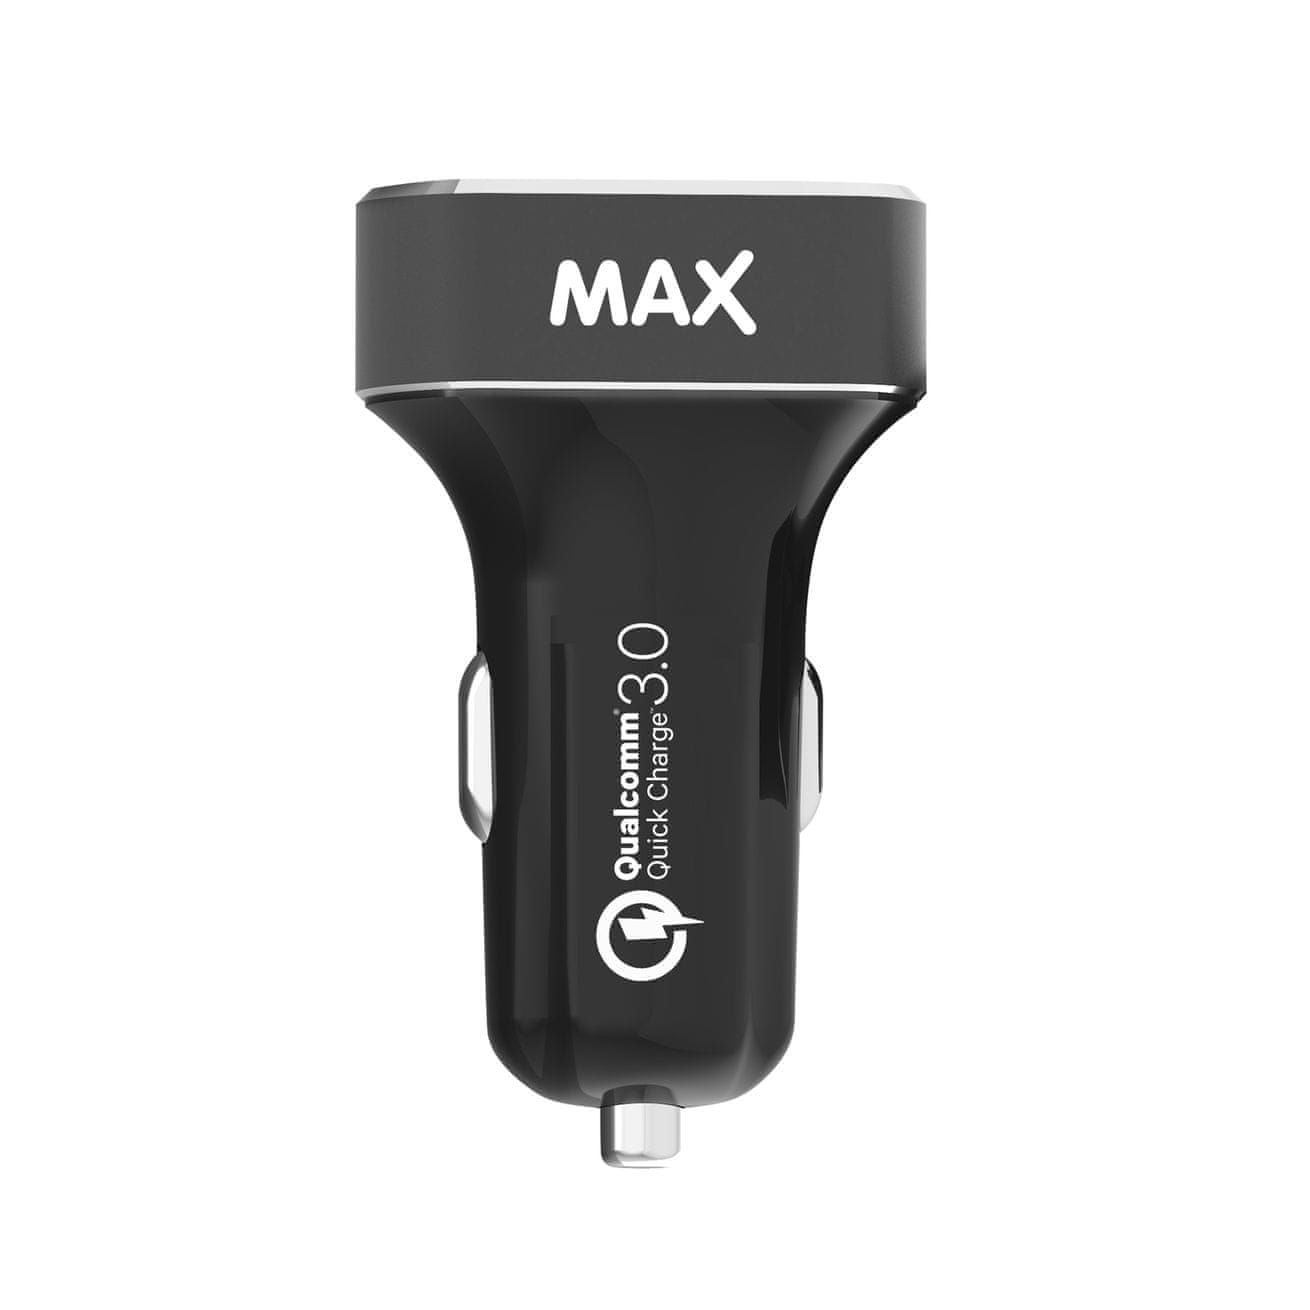  MAX rychlonabíječka MCC3310BG 2 x USB A - 1 x USB C